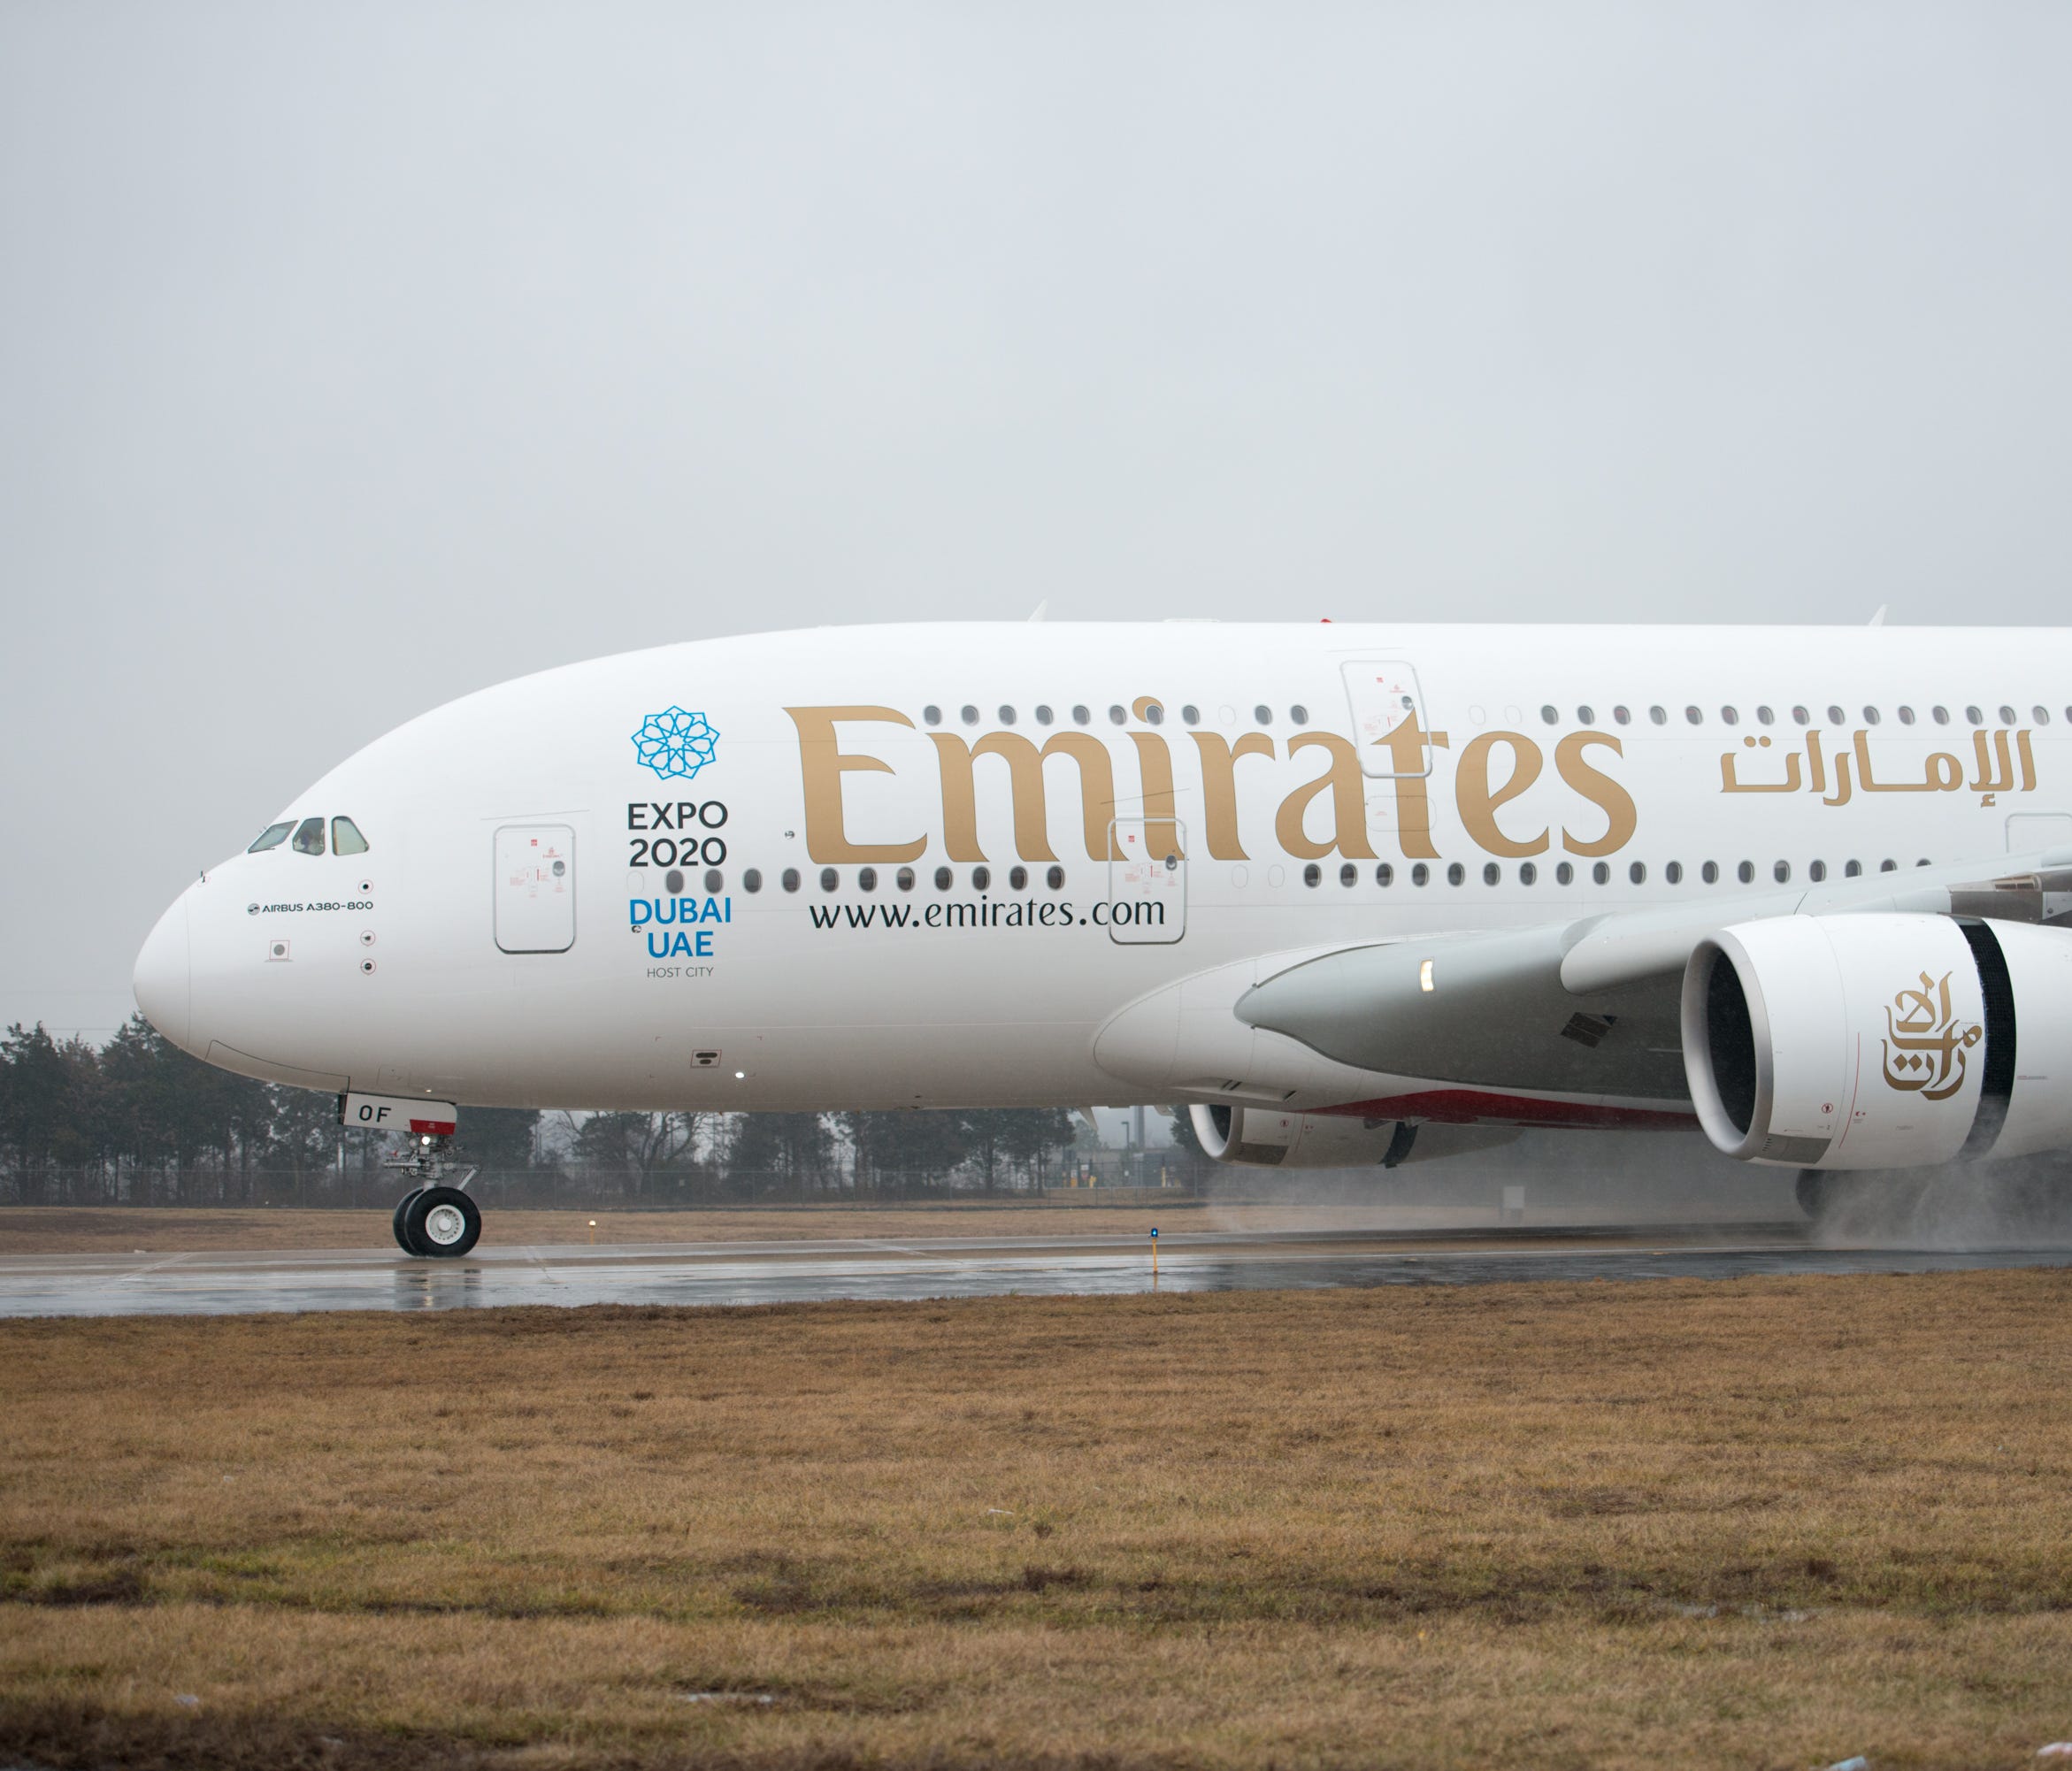 Emirates' Airbus A380 